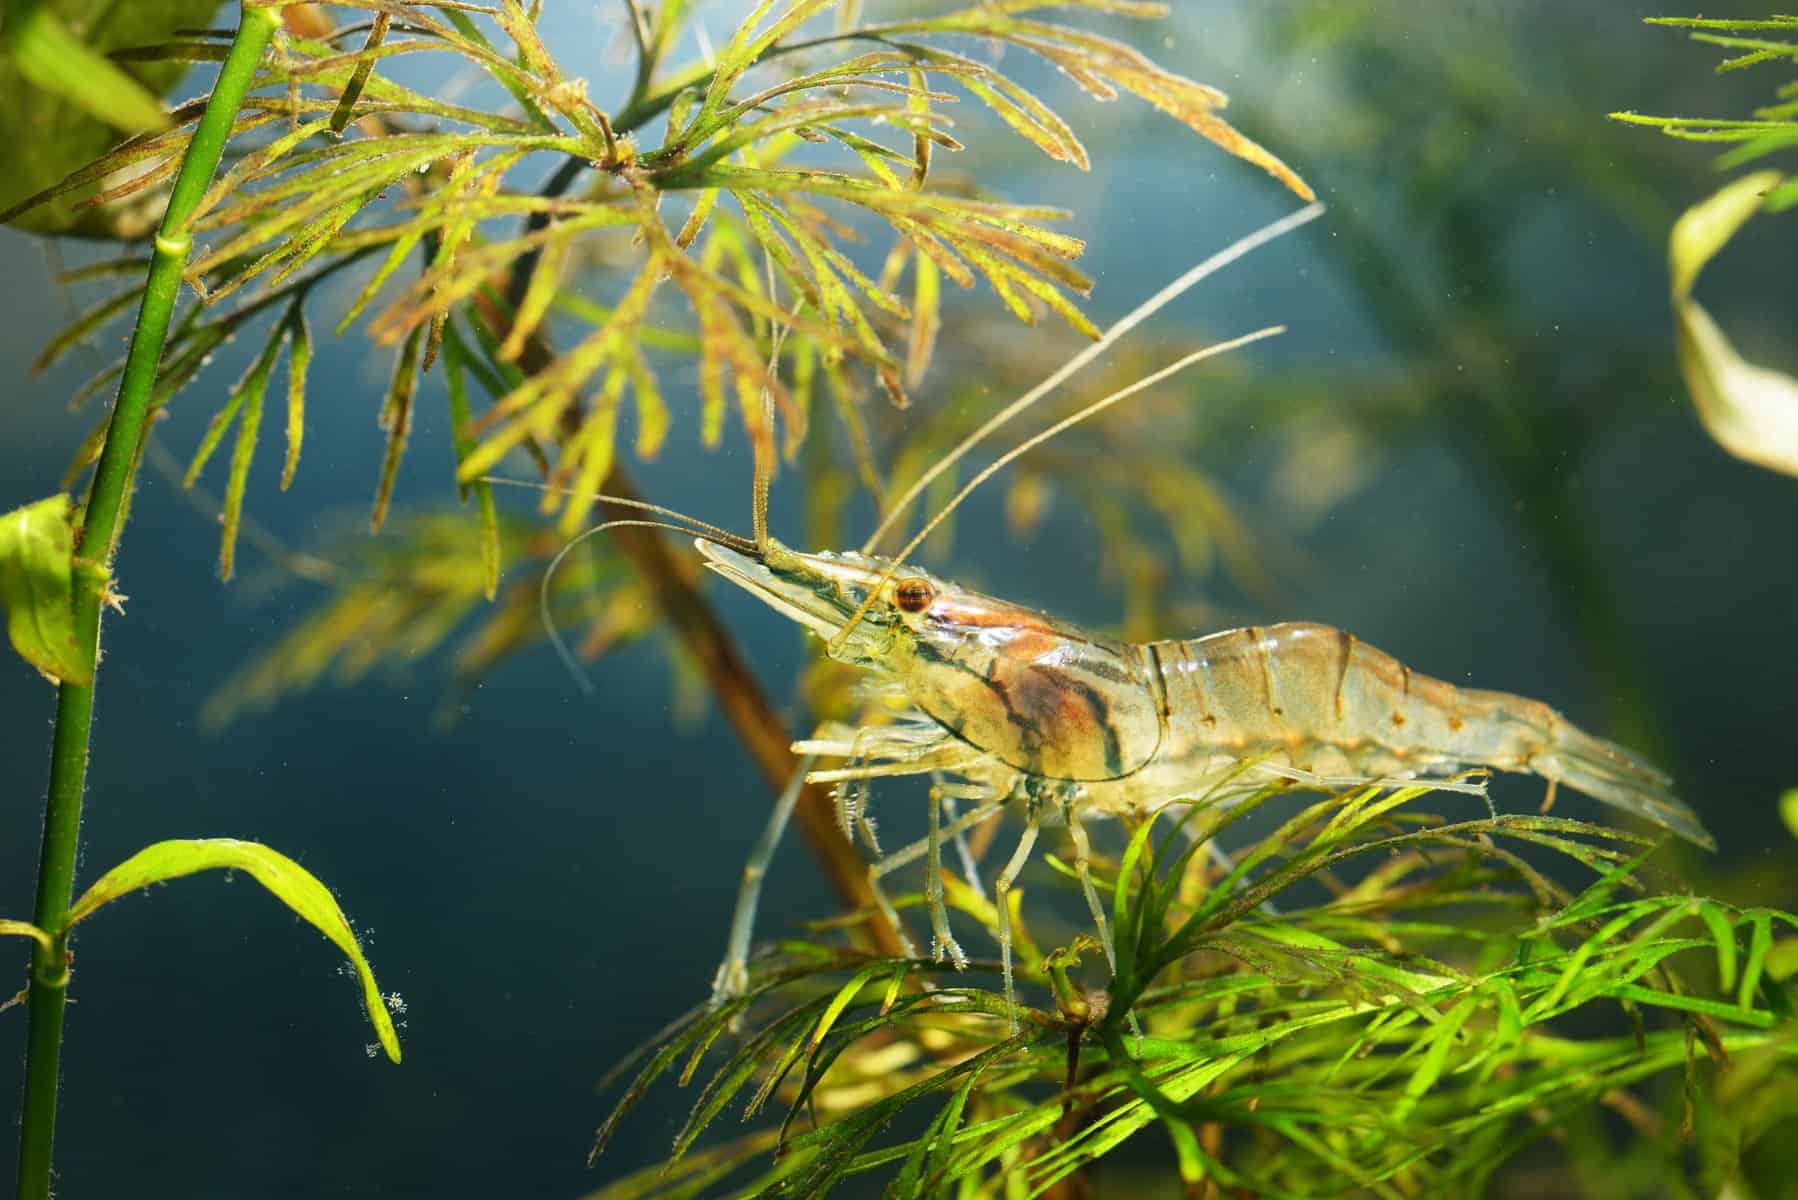 whisker shrimp